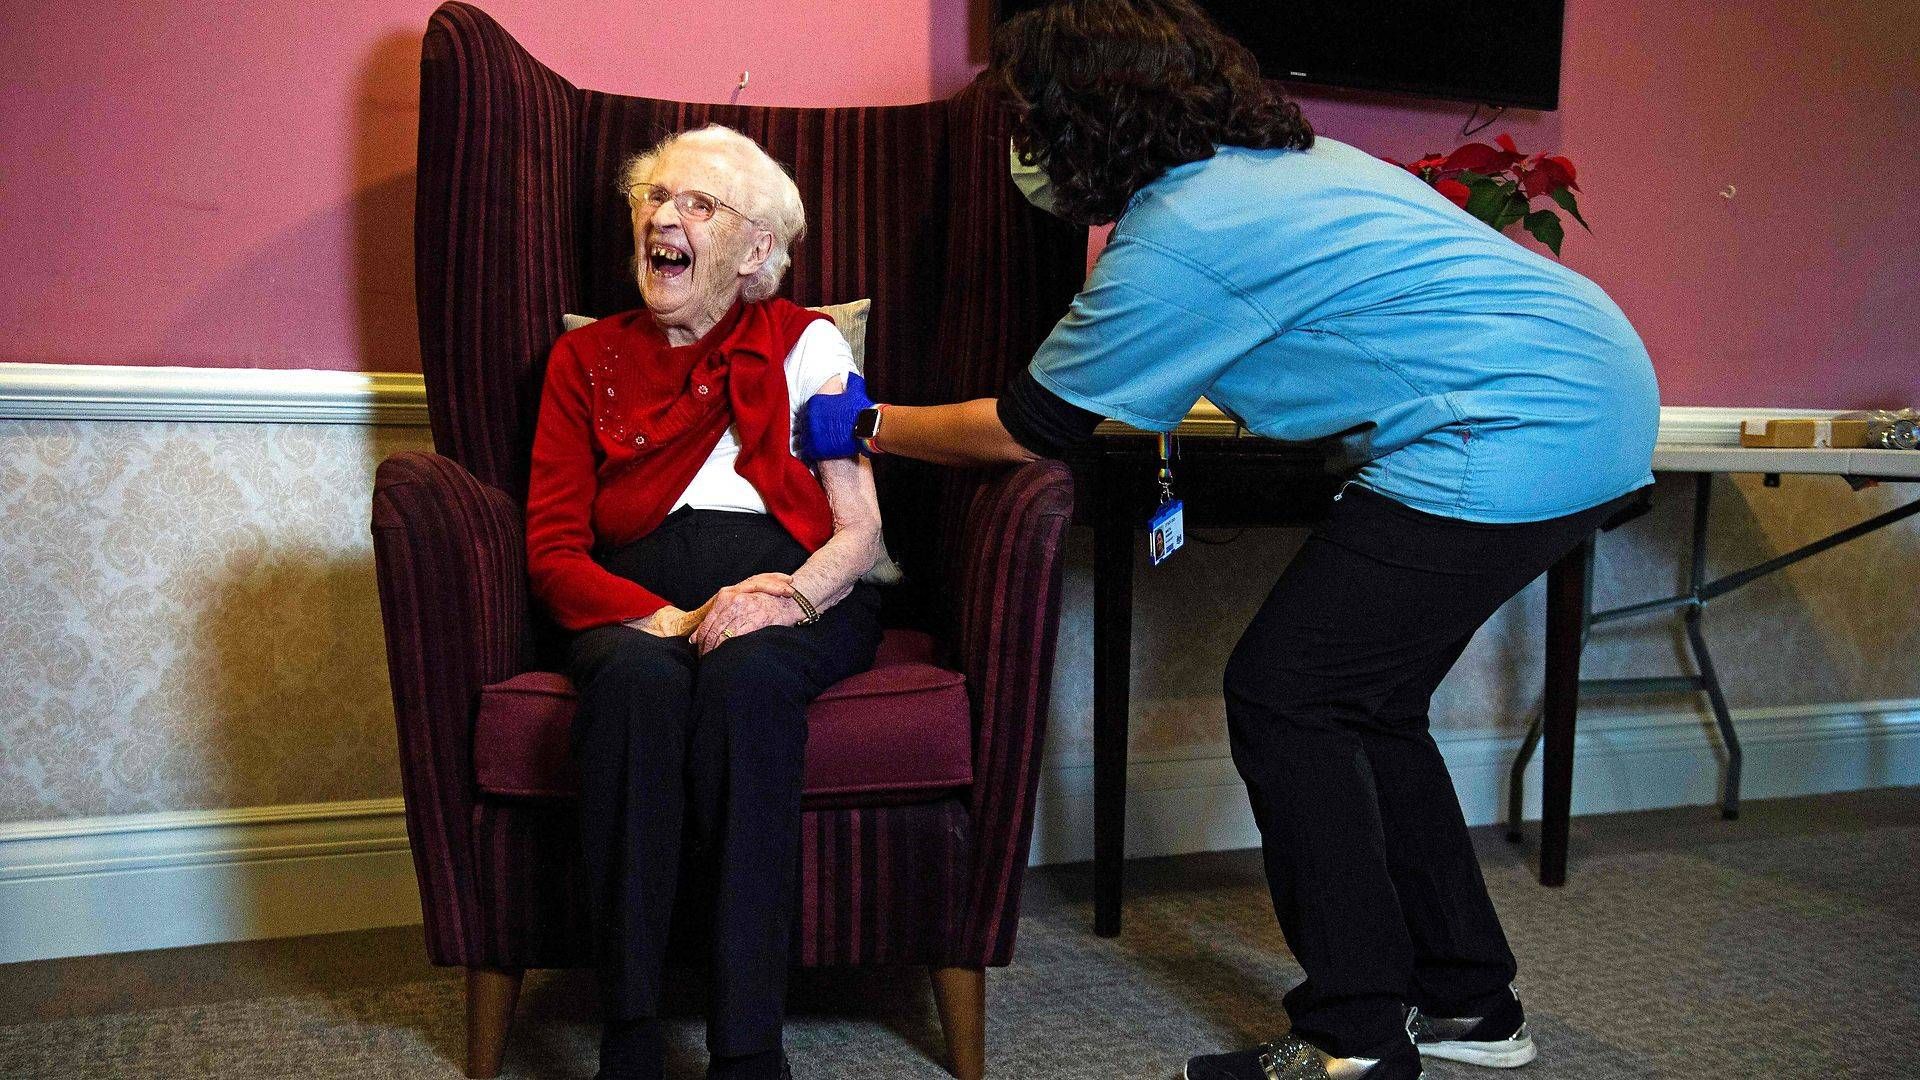 Vaccine fra AstraZenaca er taget i brug i Storbritannien, hvor 100-årige Ellen Prosser fik den på et plejehjem torsdag 7. januar. Den kan være på vej mod snarlig betinget markedsgodkendelse i EU. | Foto: Kirsty O'connor/AFP/Ritzau Scanpix